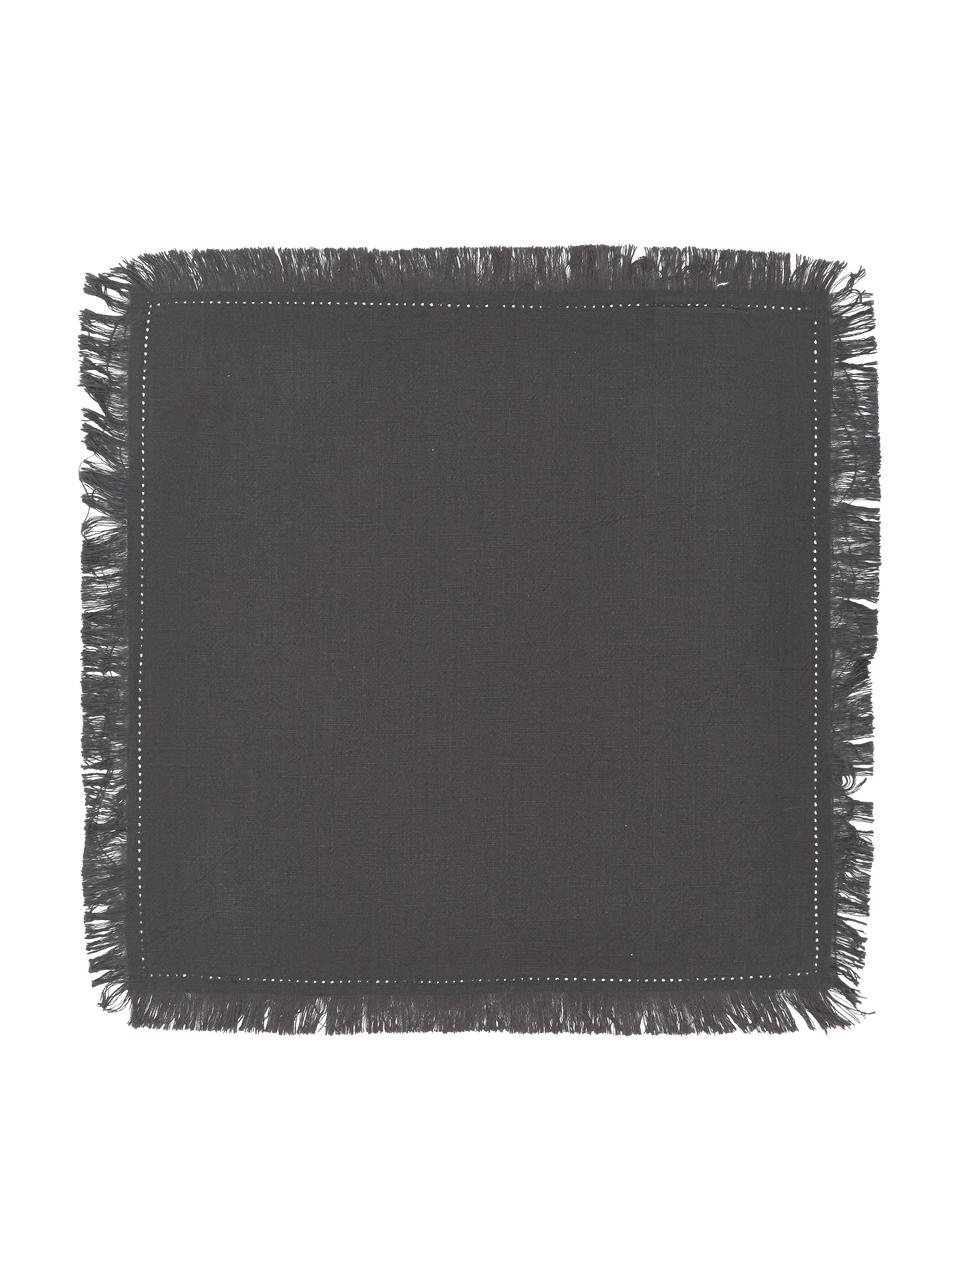 Baumwoll-Servietten Hilma mit Fransen, 2 Stück, 100% Baumwolle, Schwarz, 45 x 45 cm